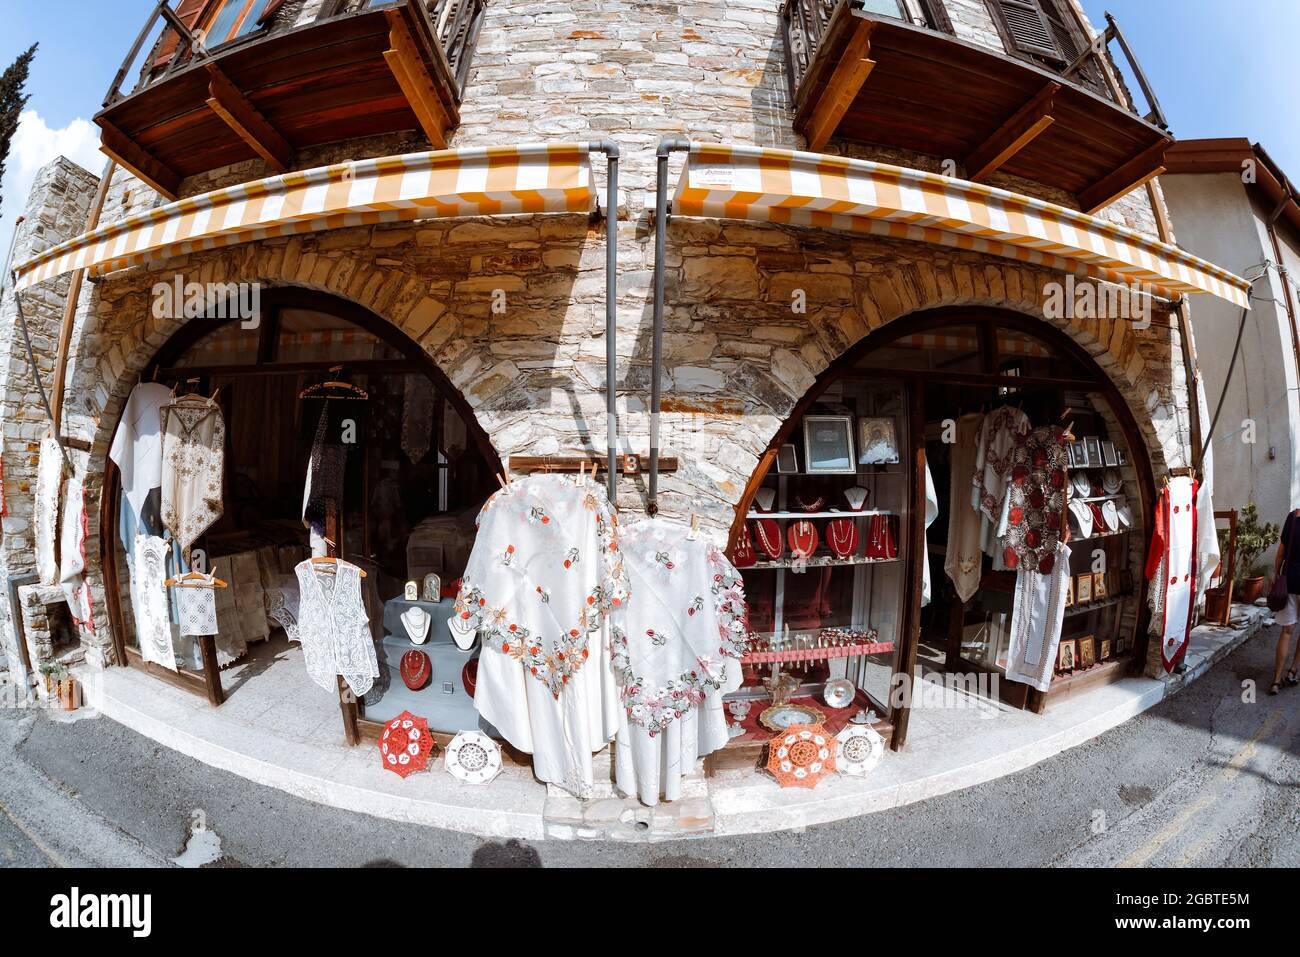 LEFKARA, ZYPERN - 29. September 2017: Souvenirladen, in dem Produkte von lokalen Silberschmieden und Spitzenherstellern verkauft werden Stockfoto